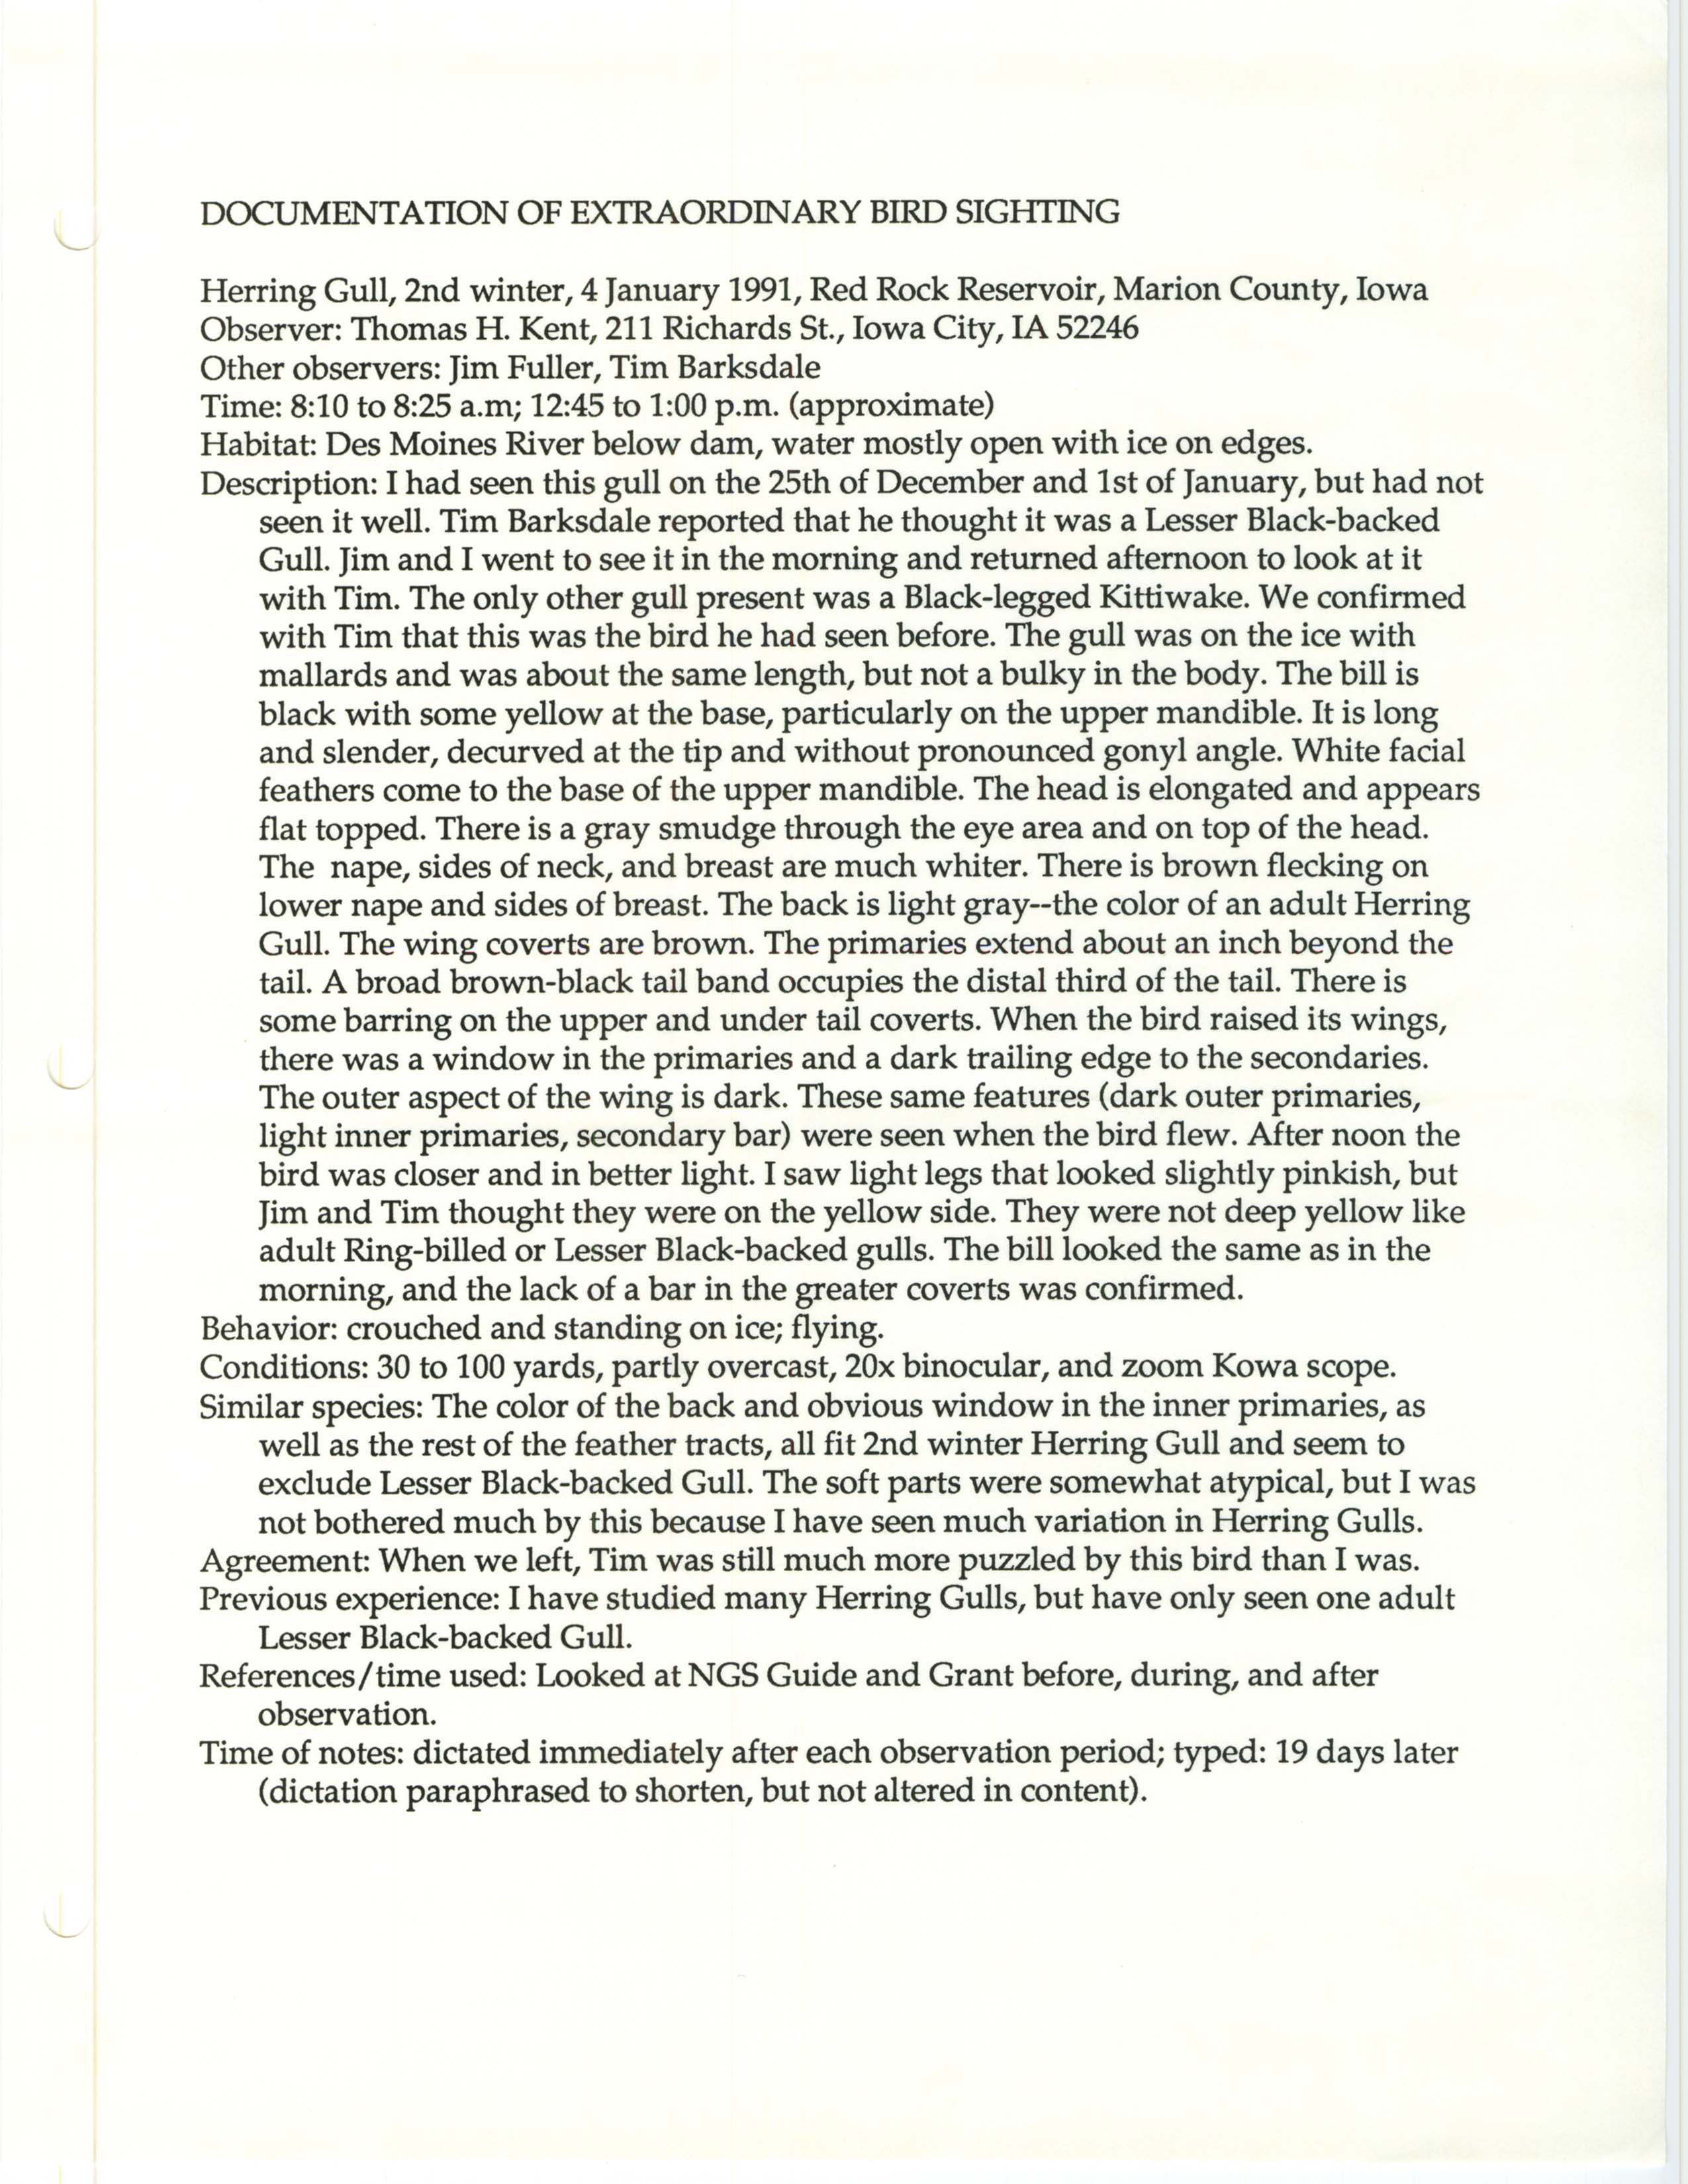 Rare bird documentation form for Herring Gull at Red Rock Reservoir, 1991